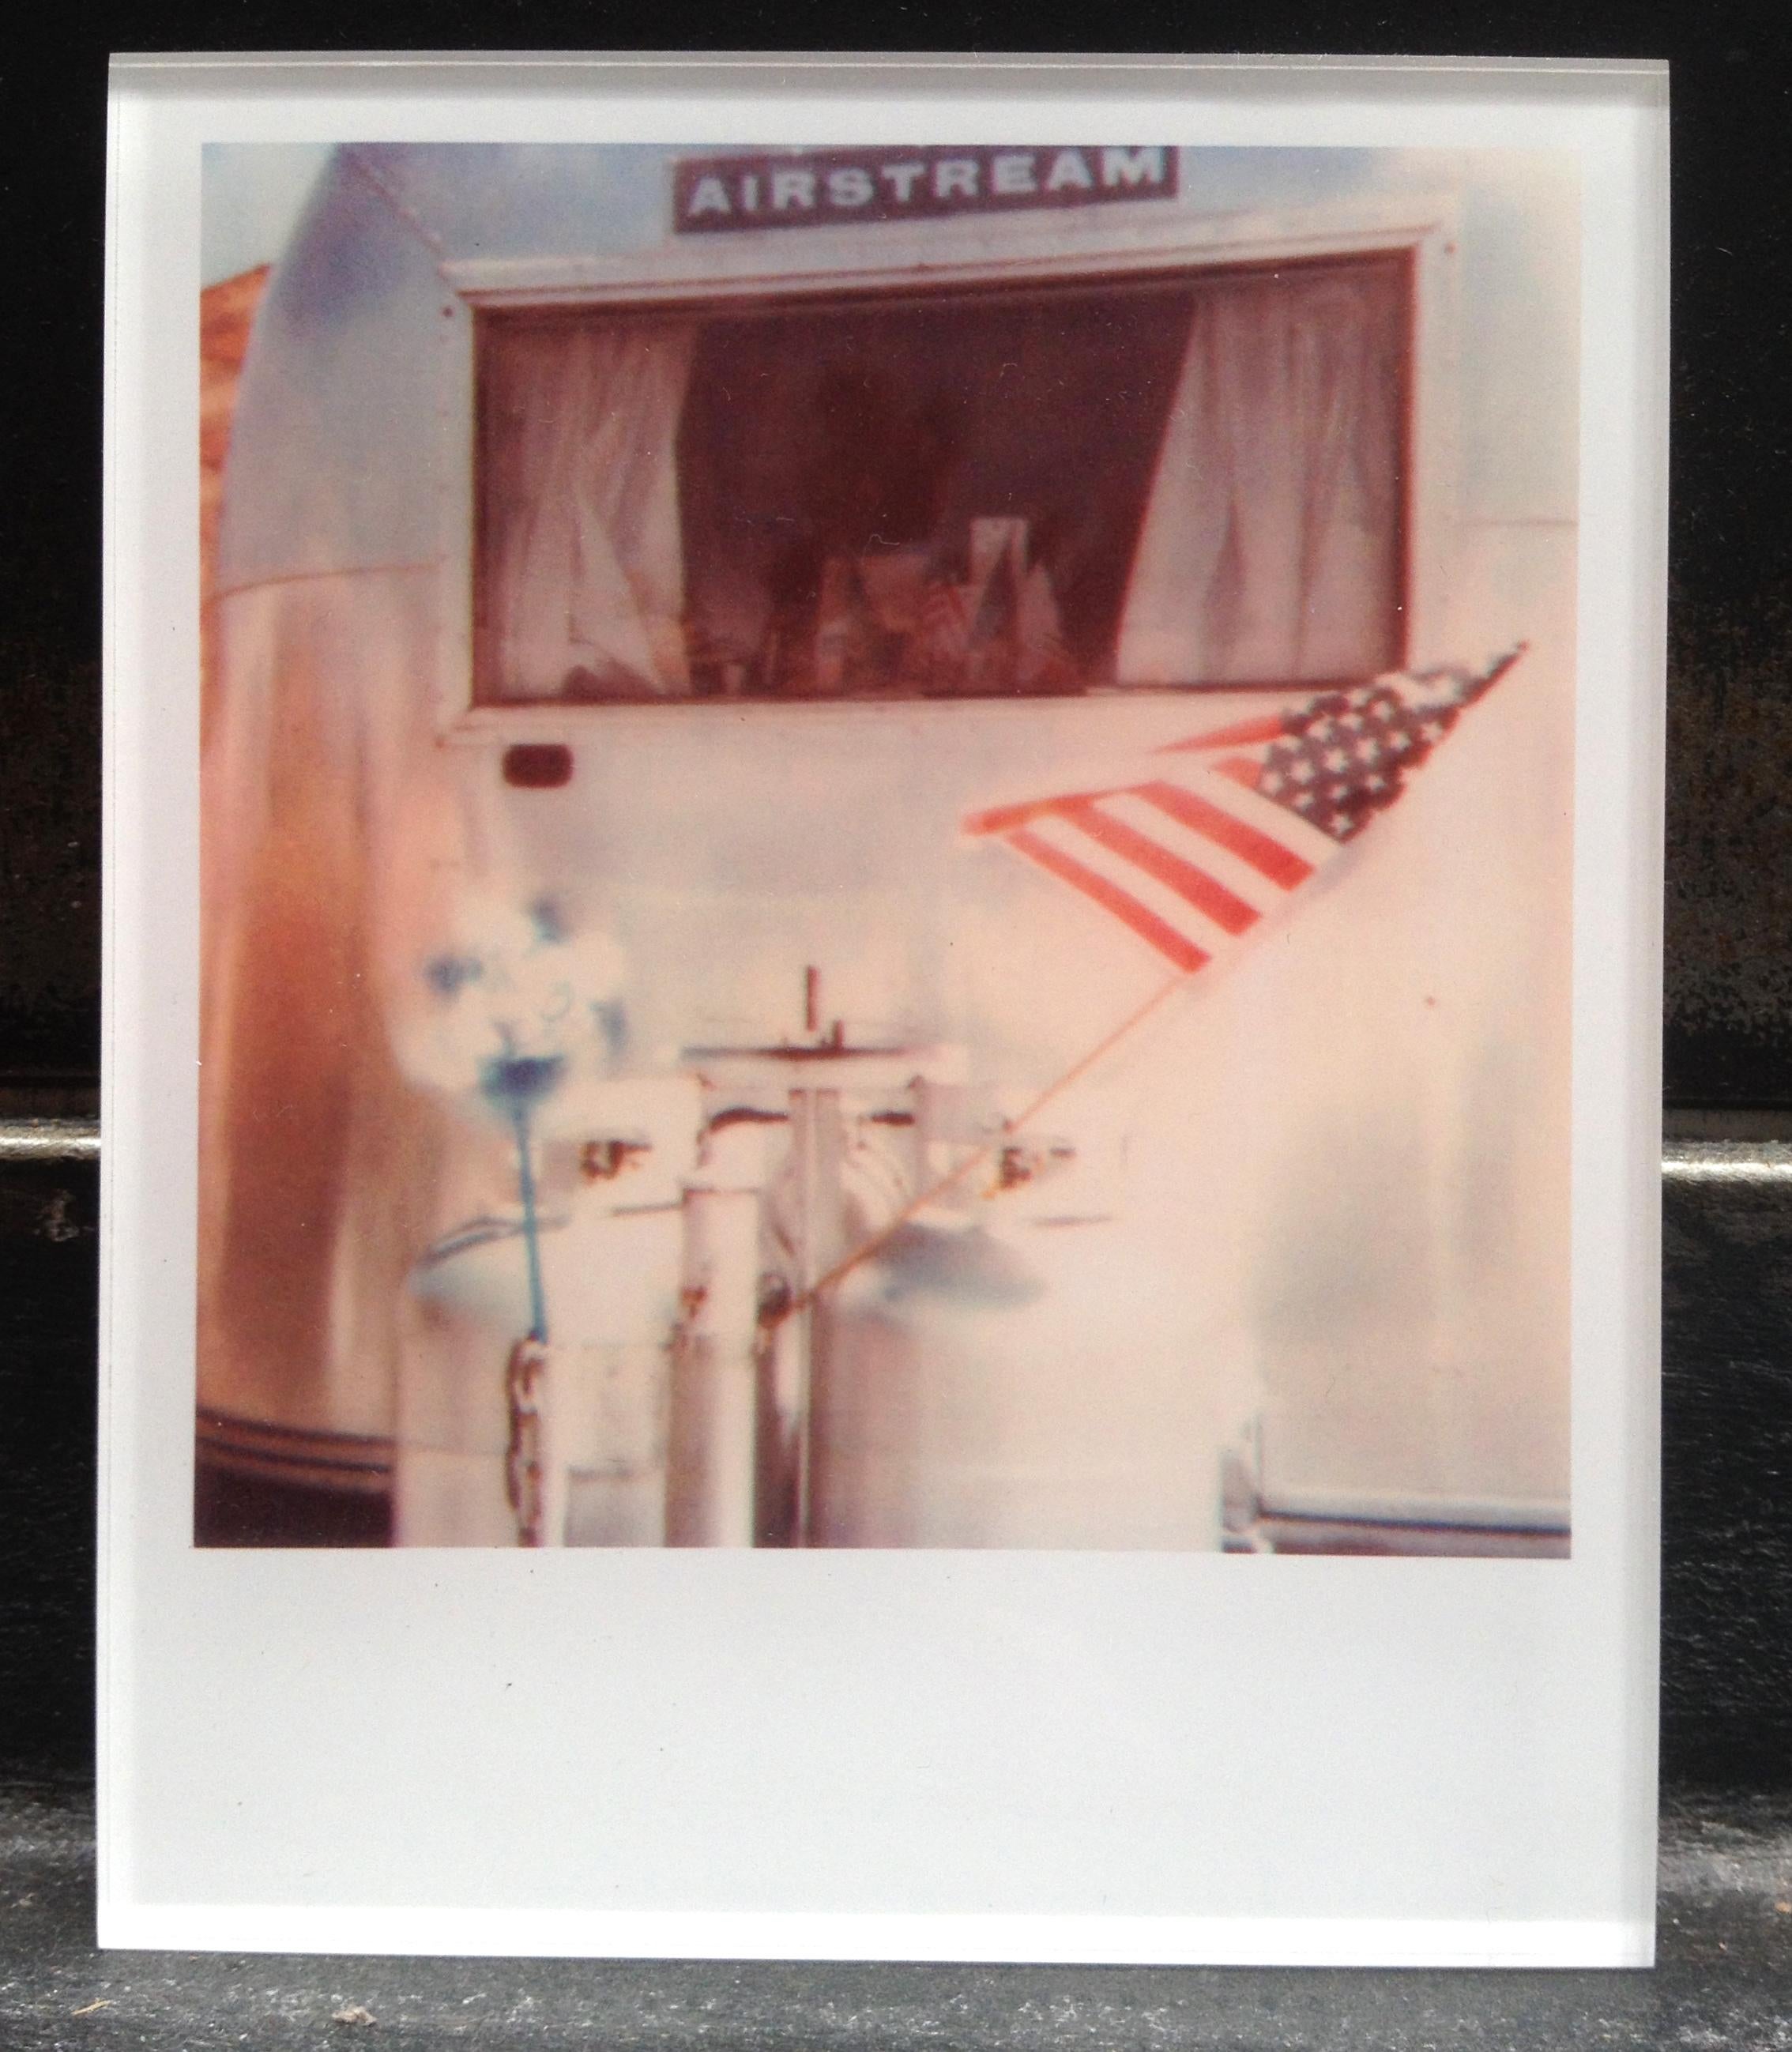 Die Minis von Stefanie Schneider
airstream" (29 Palms, CA) - 1999

verso signiert und Signaturmarke
Digitale Lambda-Farbfotografien auf der Grundlage eines Polaroids

Offene Editionen in Polaroidgröße 1999-2013
10.7 x 8,8cm (Bild